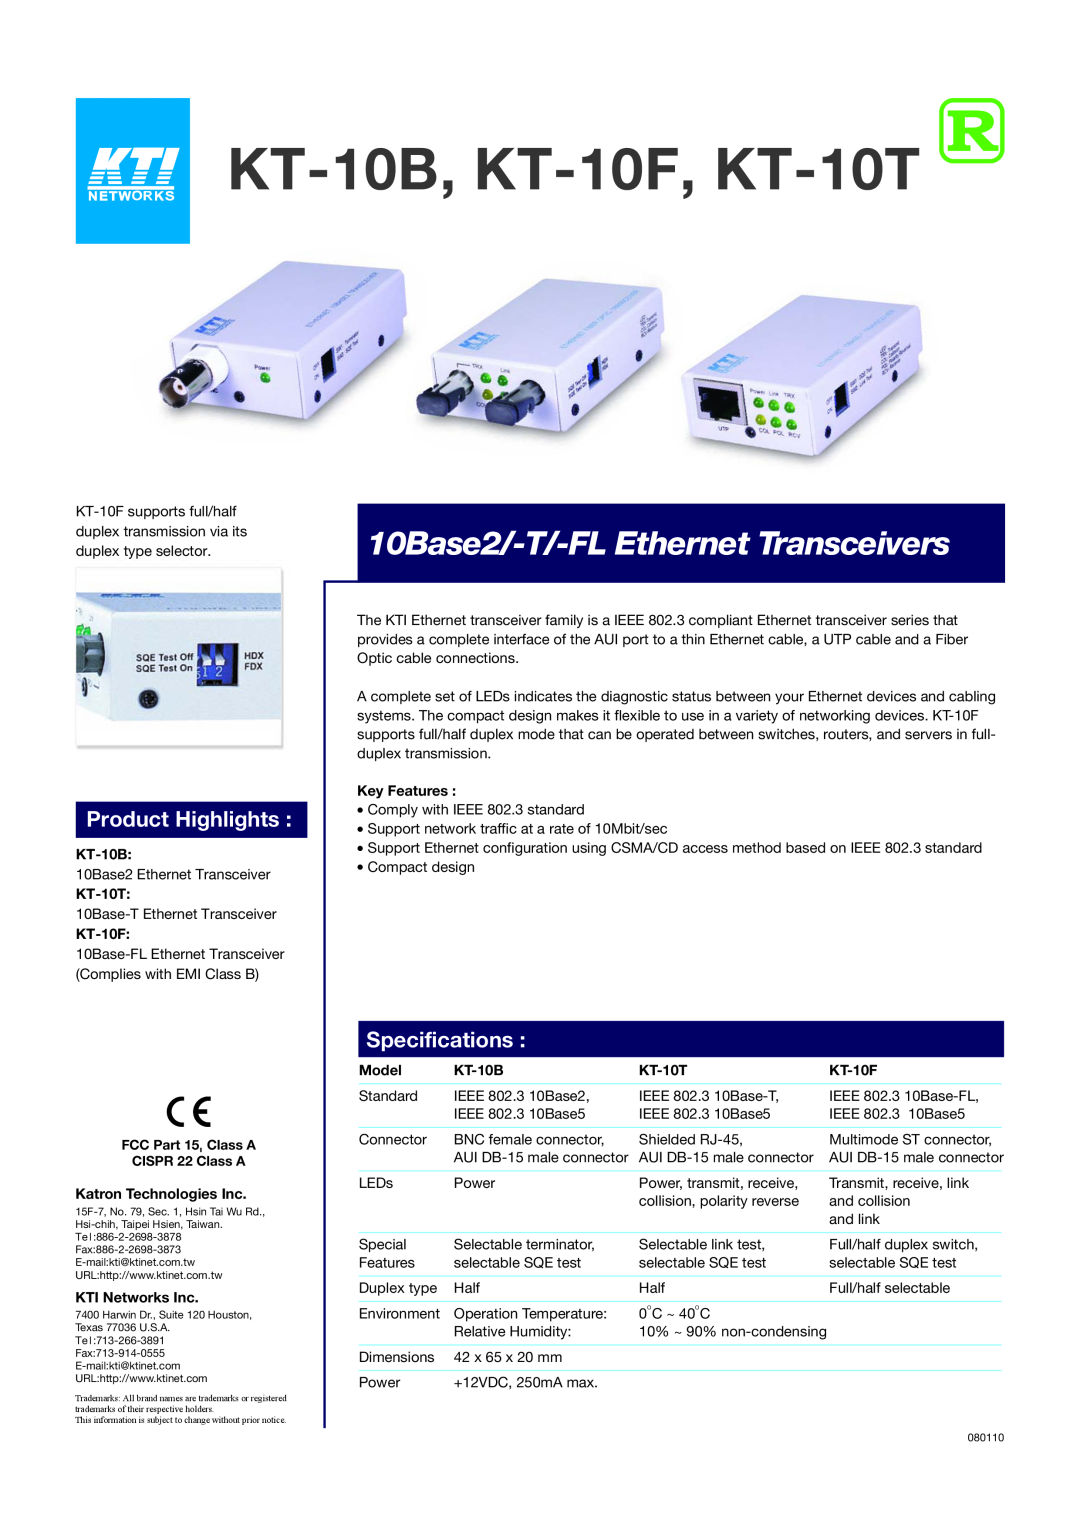 KTI Networks specifications KT-10B, KT-10F, KT-10T, 10Base2/-T/-FL Ethernet Transceivers, Product Highlights, Model 